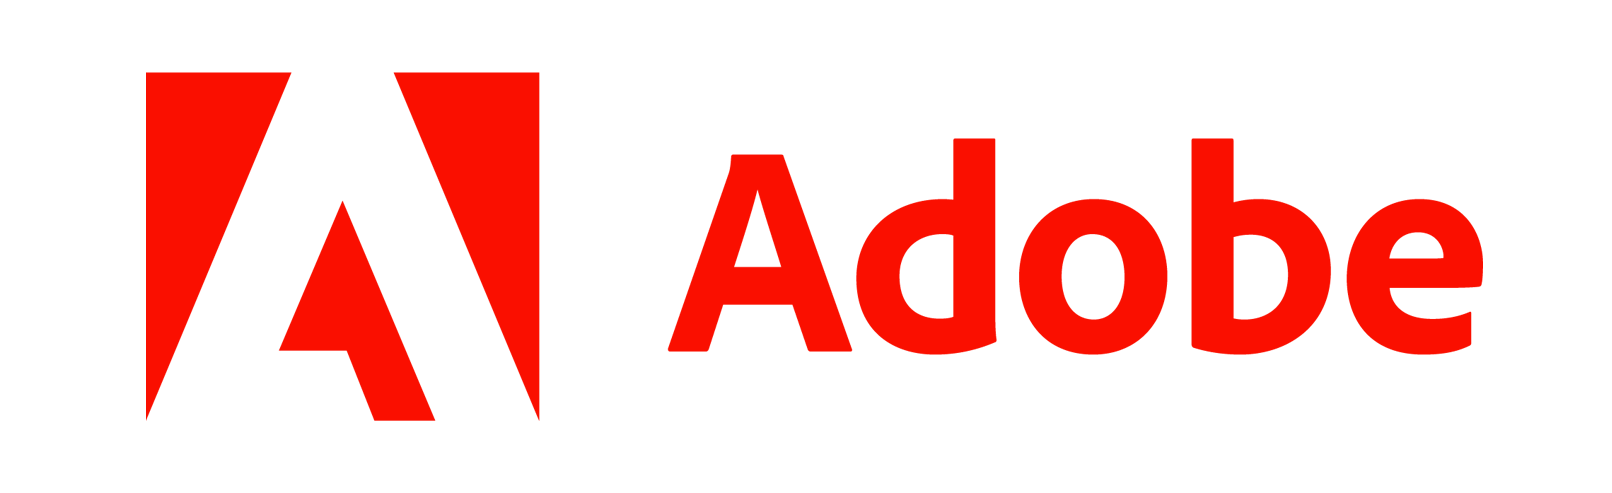 Adobe Training Courses | CourseMonsterVendor Logo